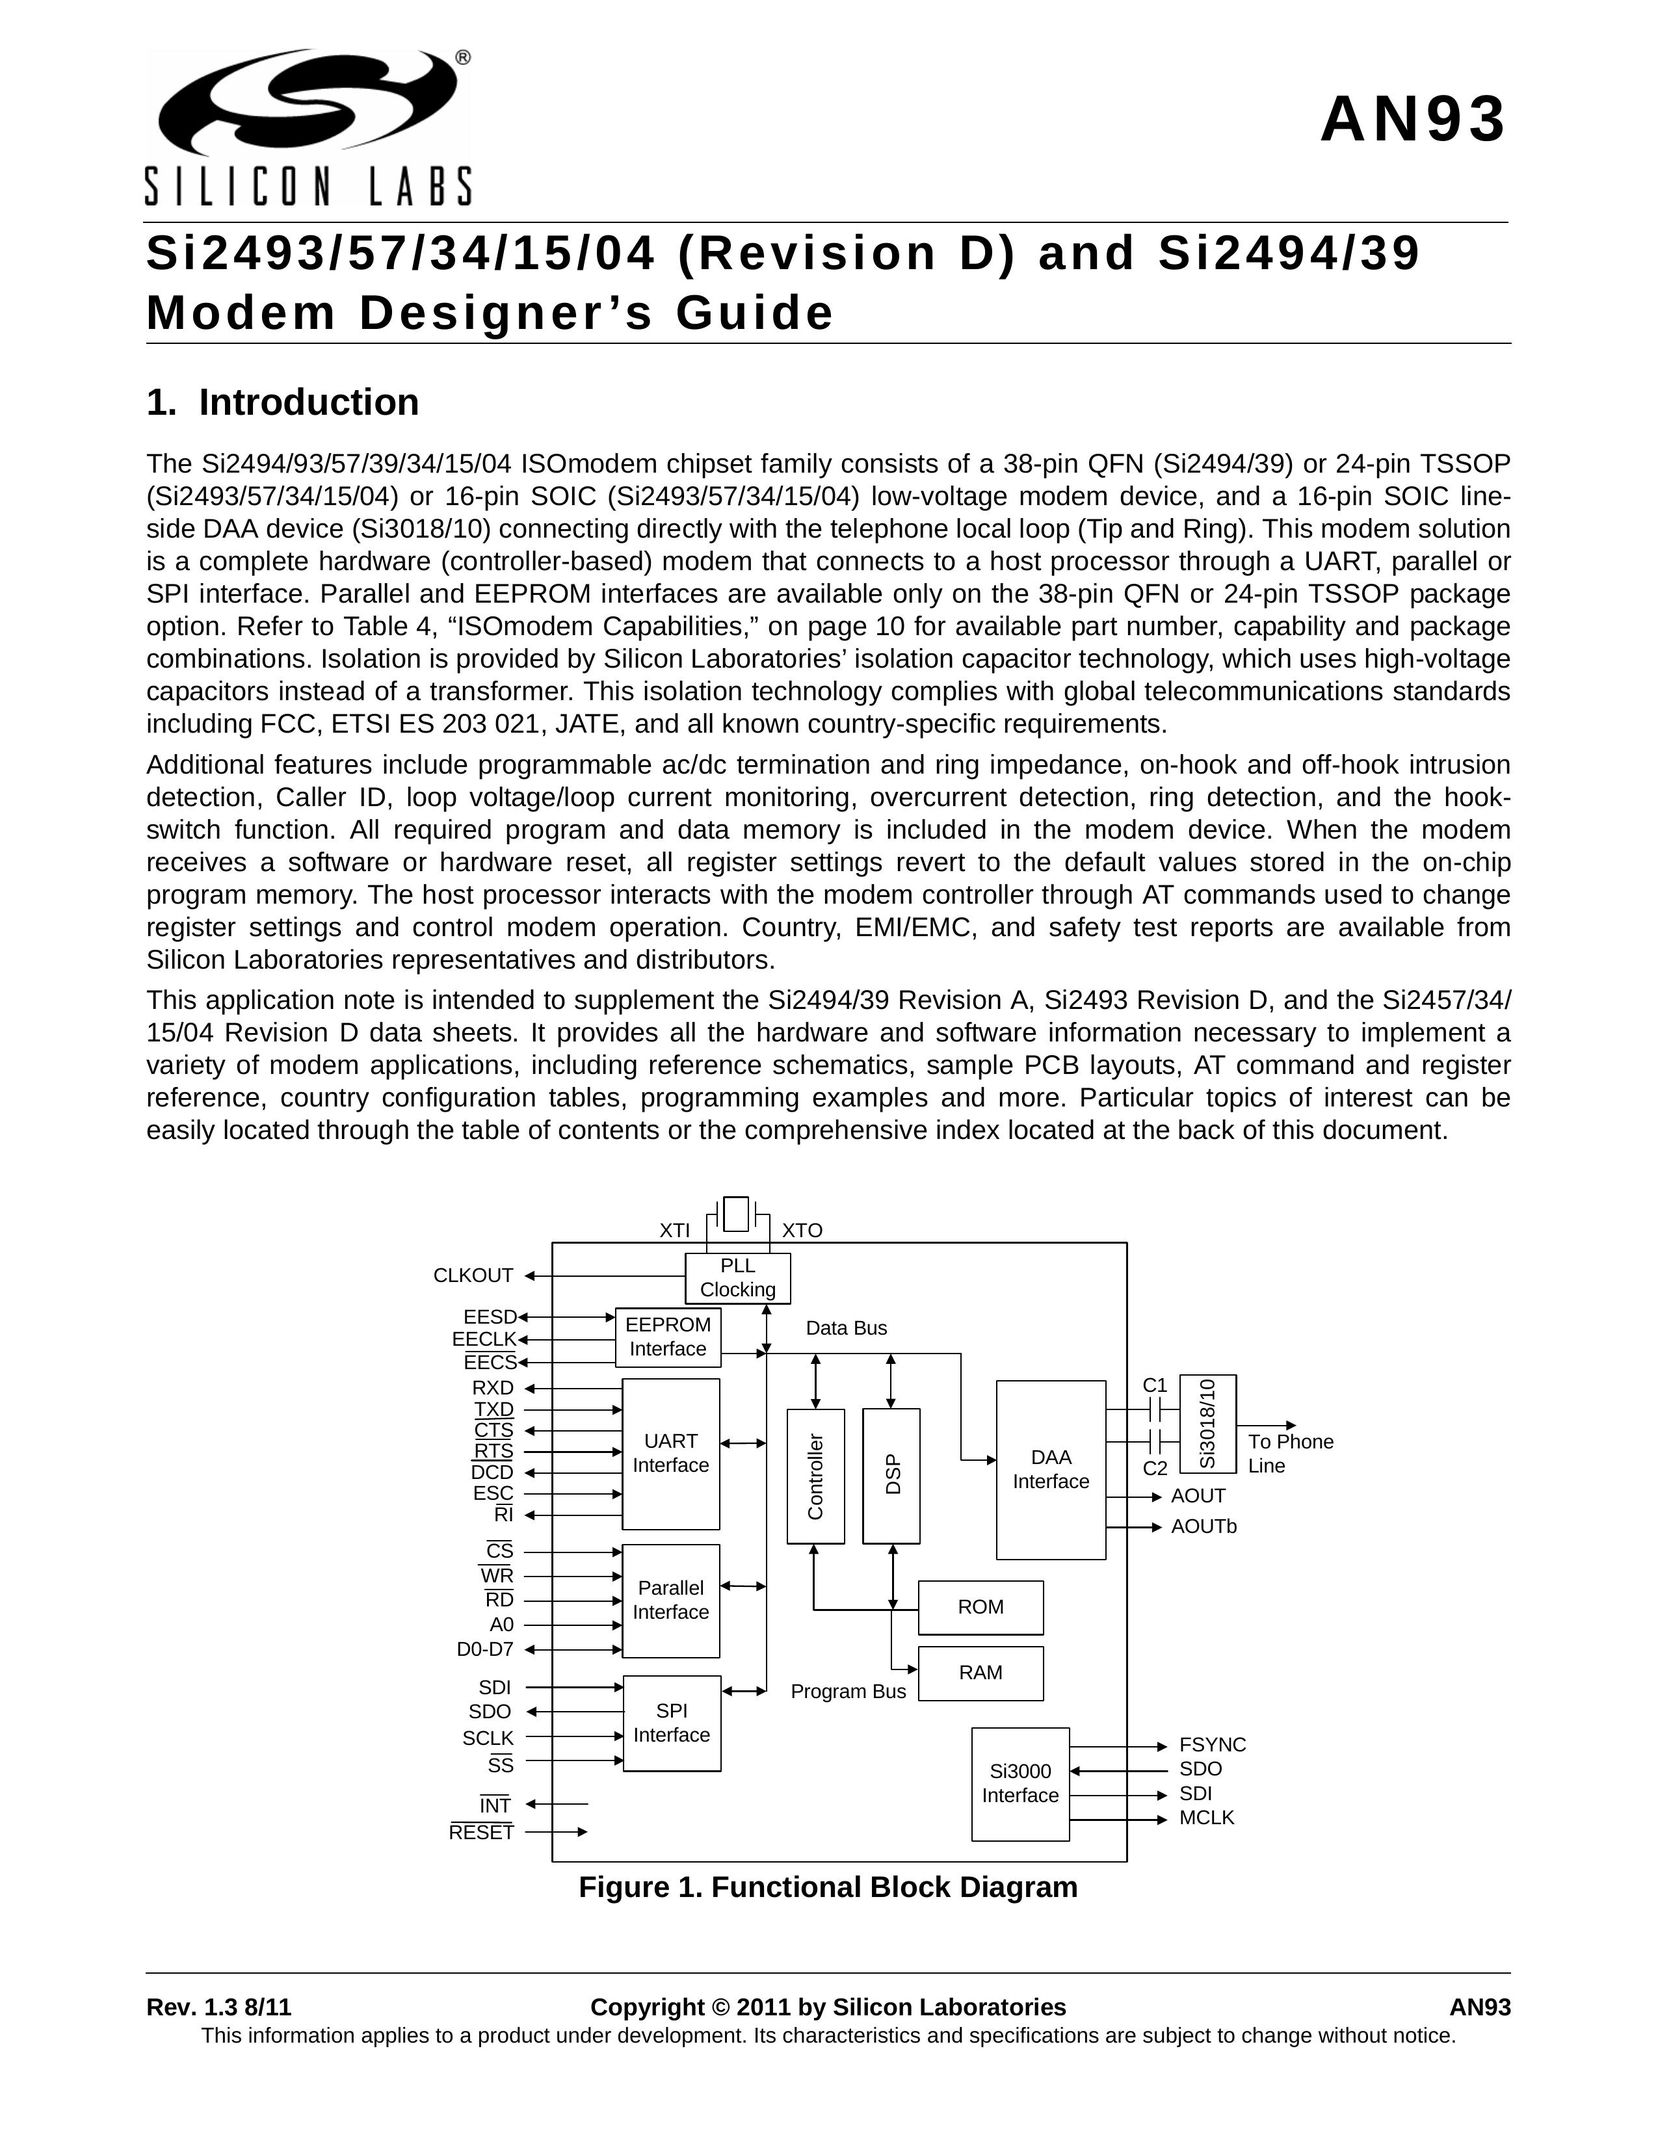 Silicon Laboratories SI2494/39 Modem User Manual